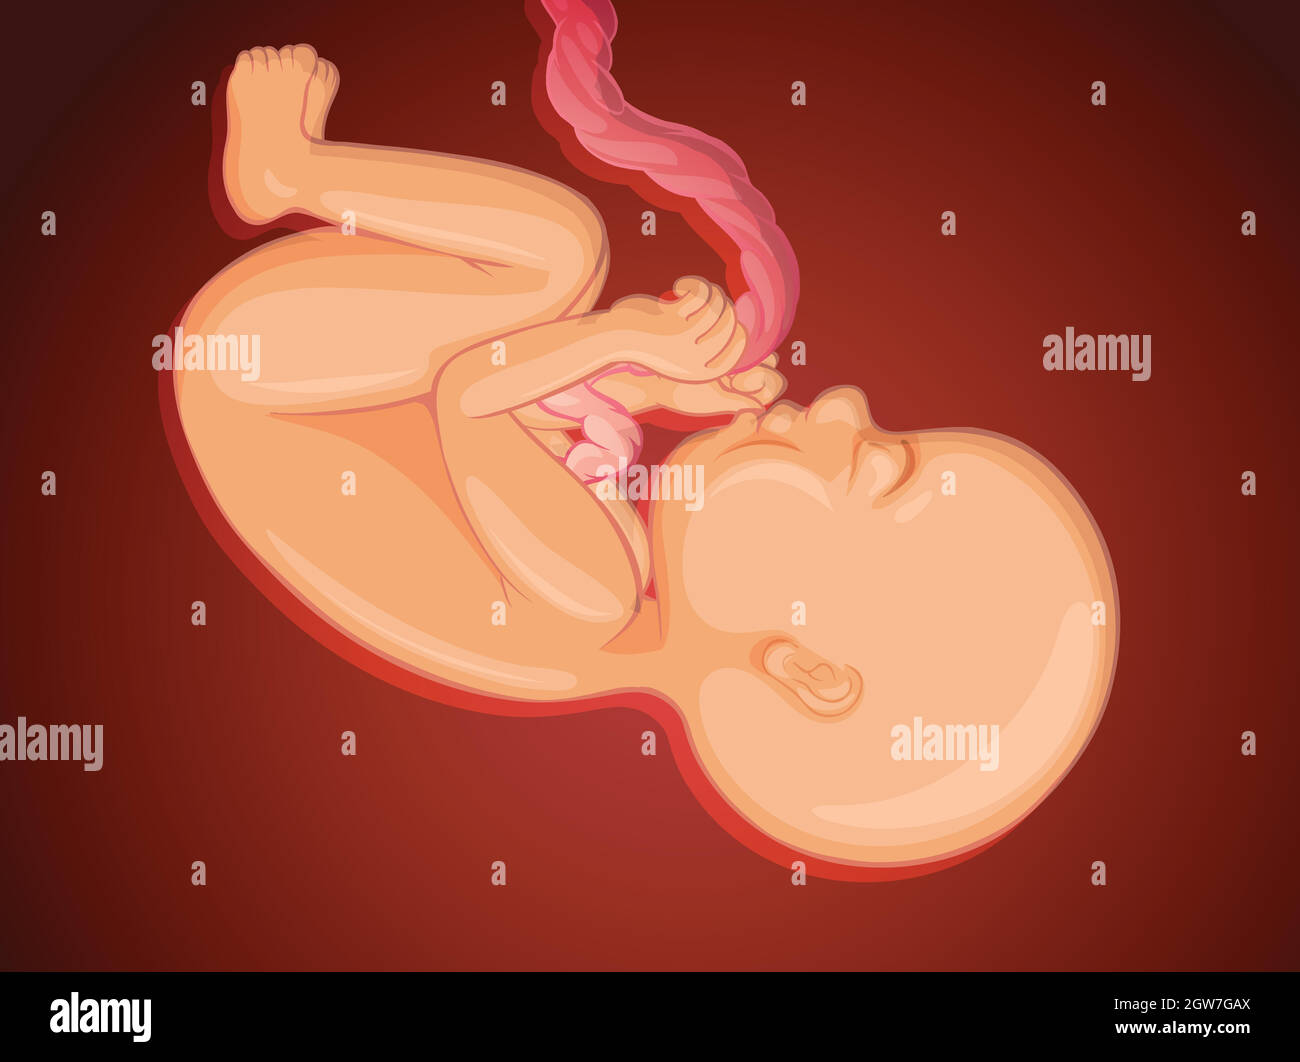 Bambino all'interno dell'utero materno Illustrazione Vettoriale